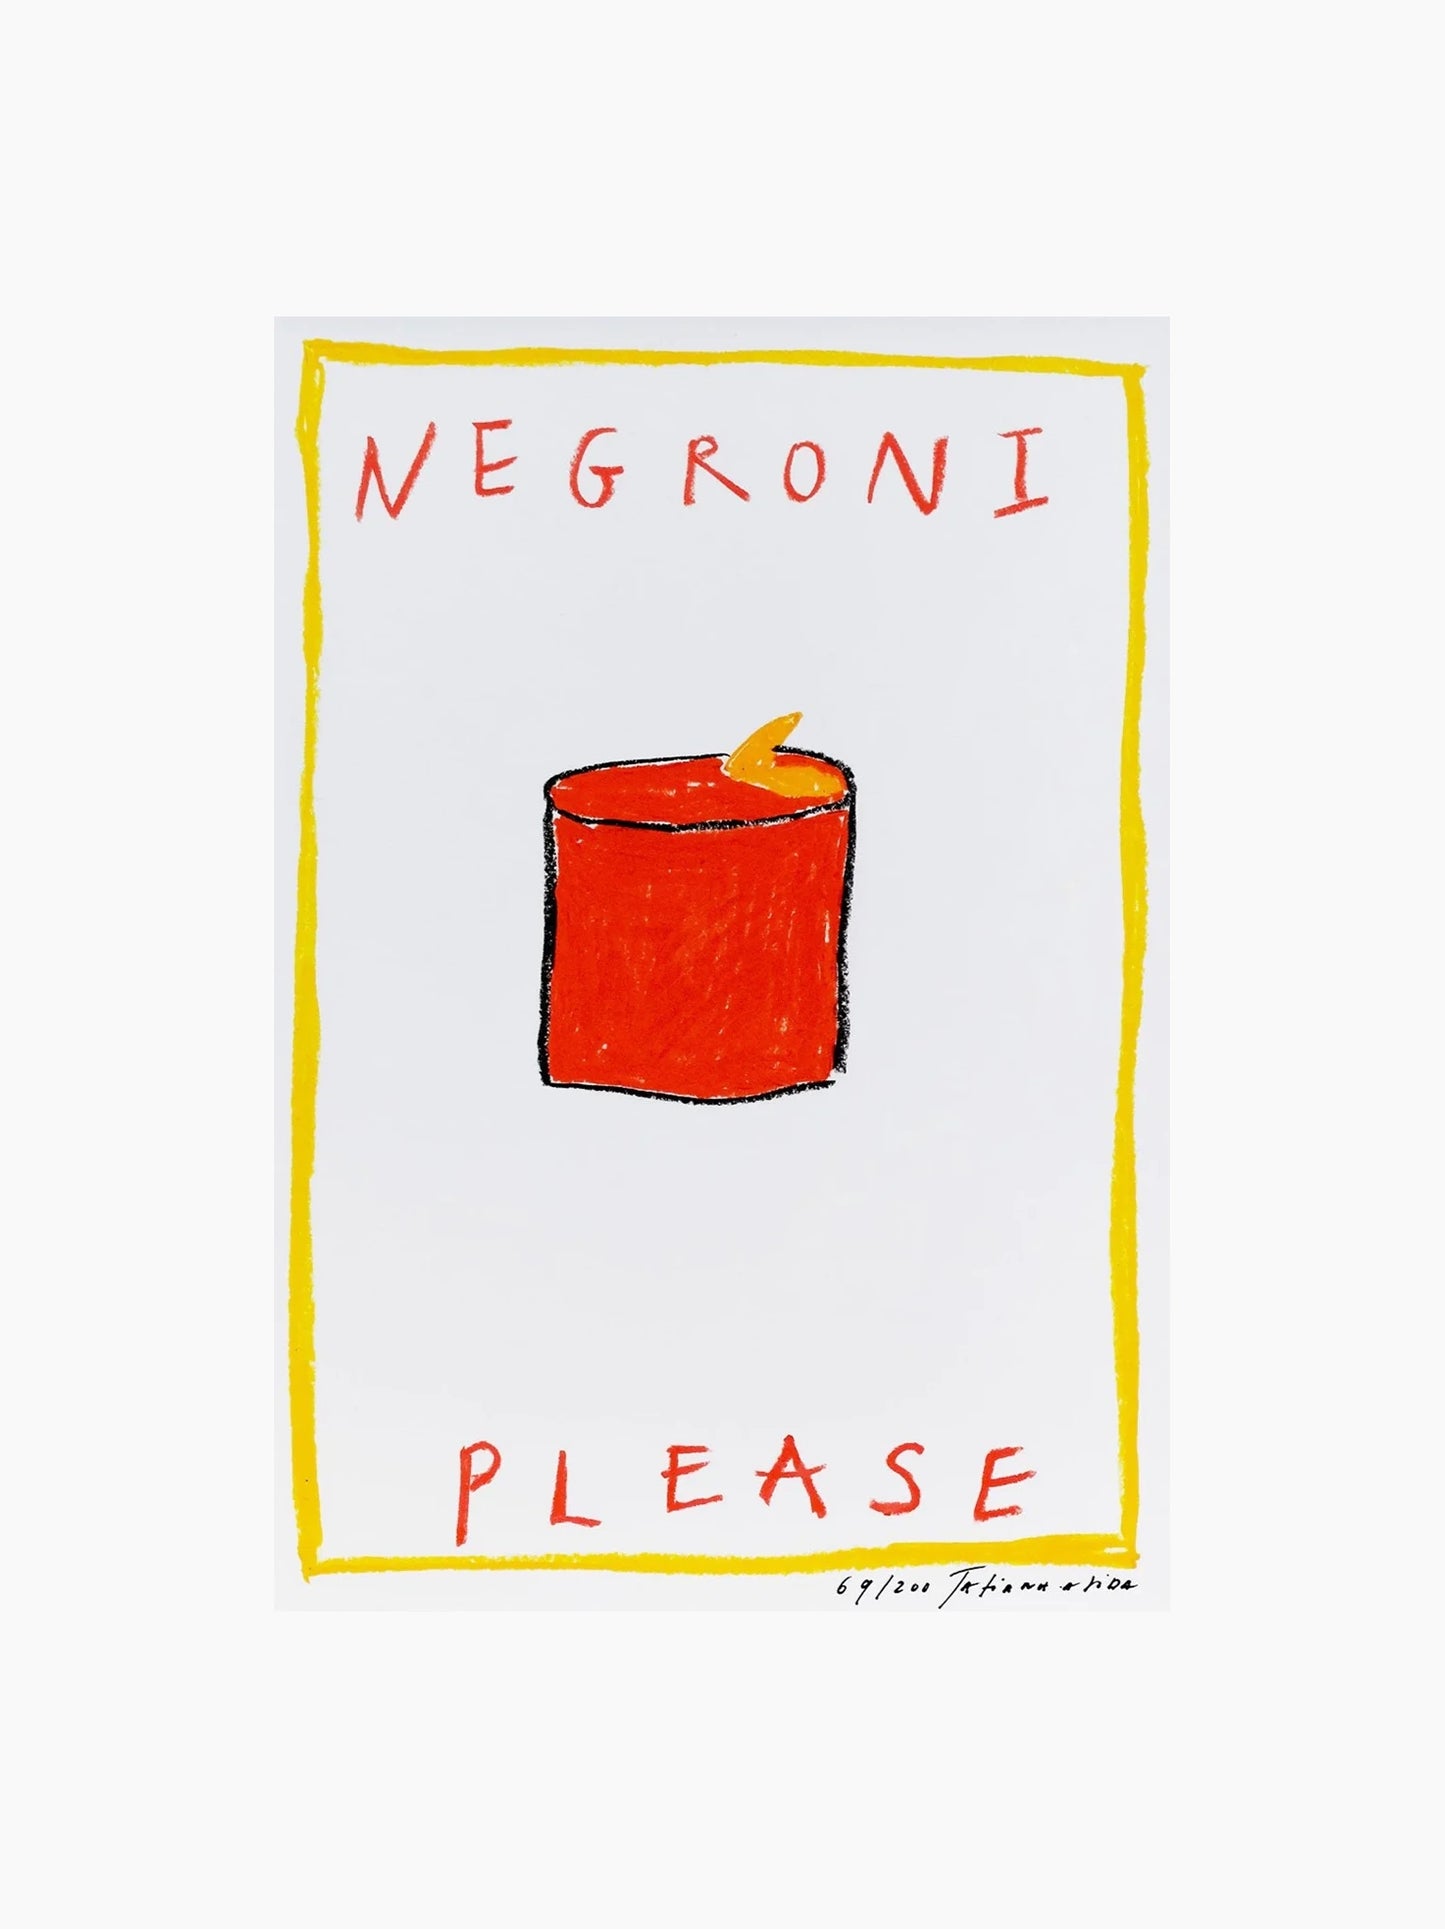 Negroni Please Art Print